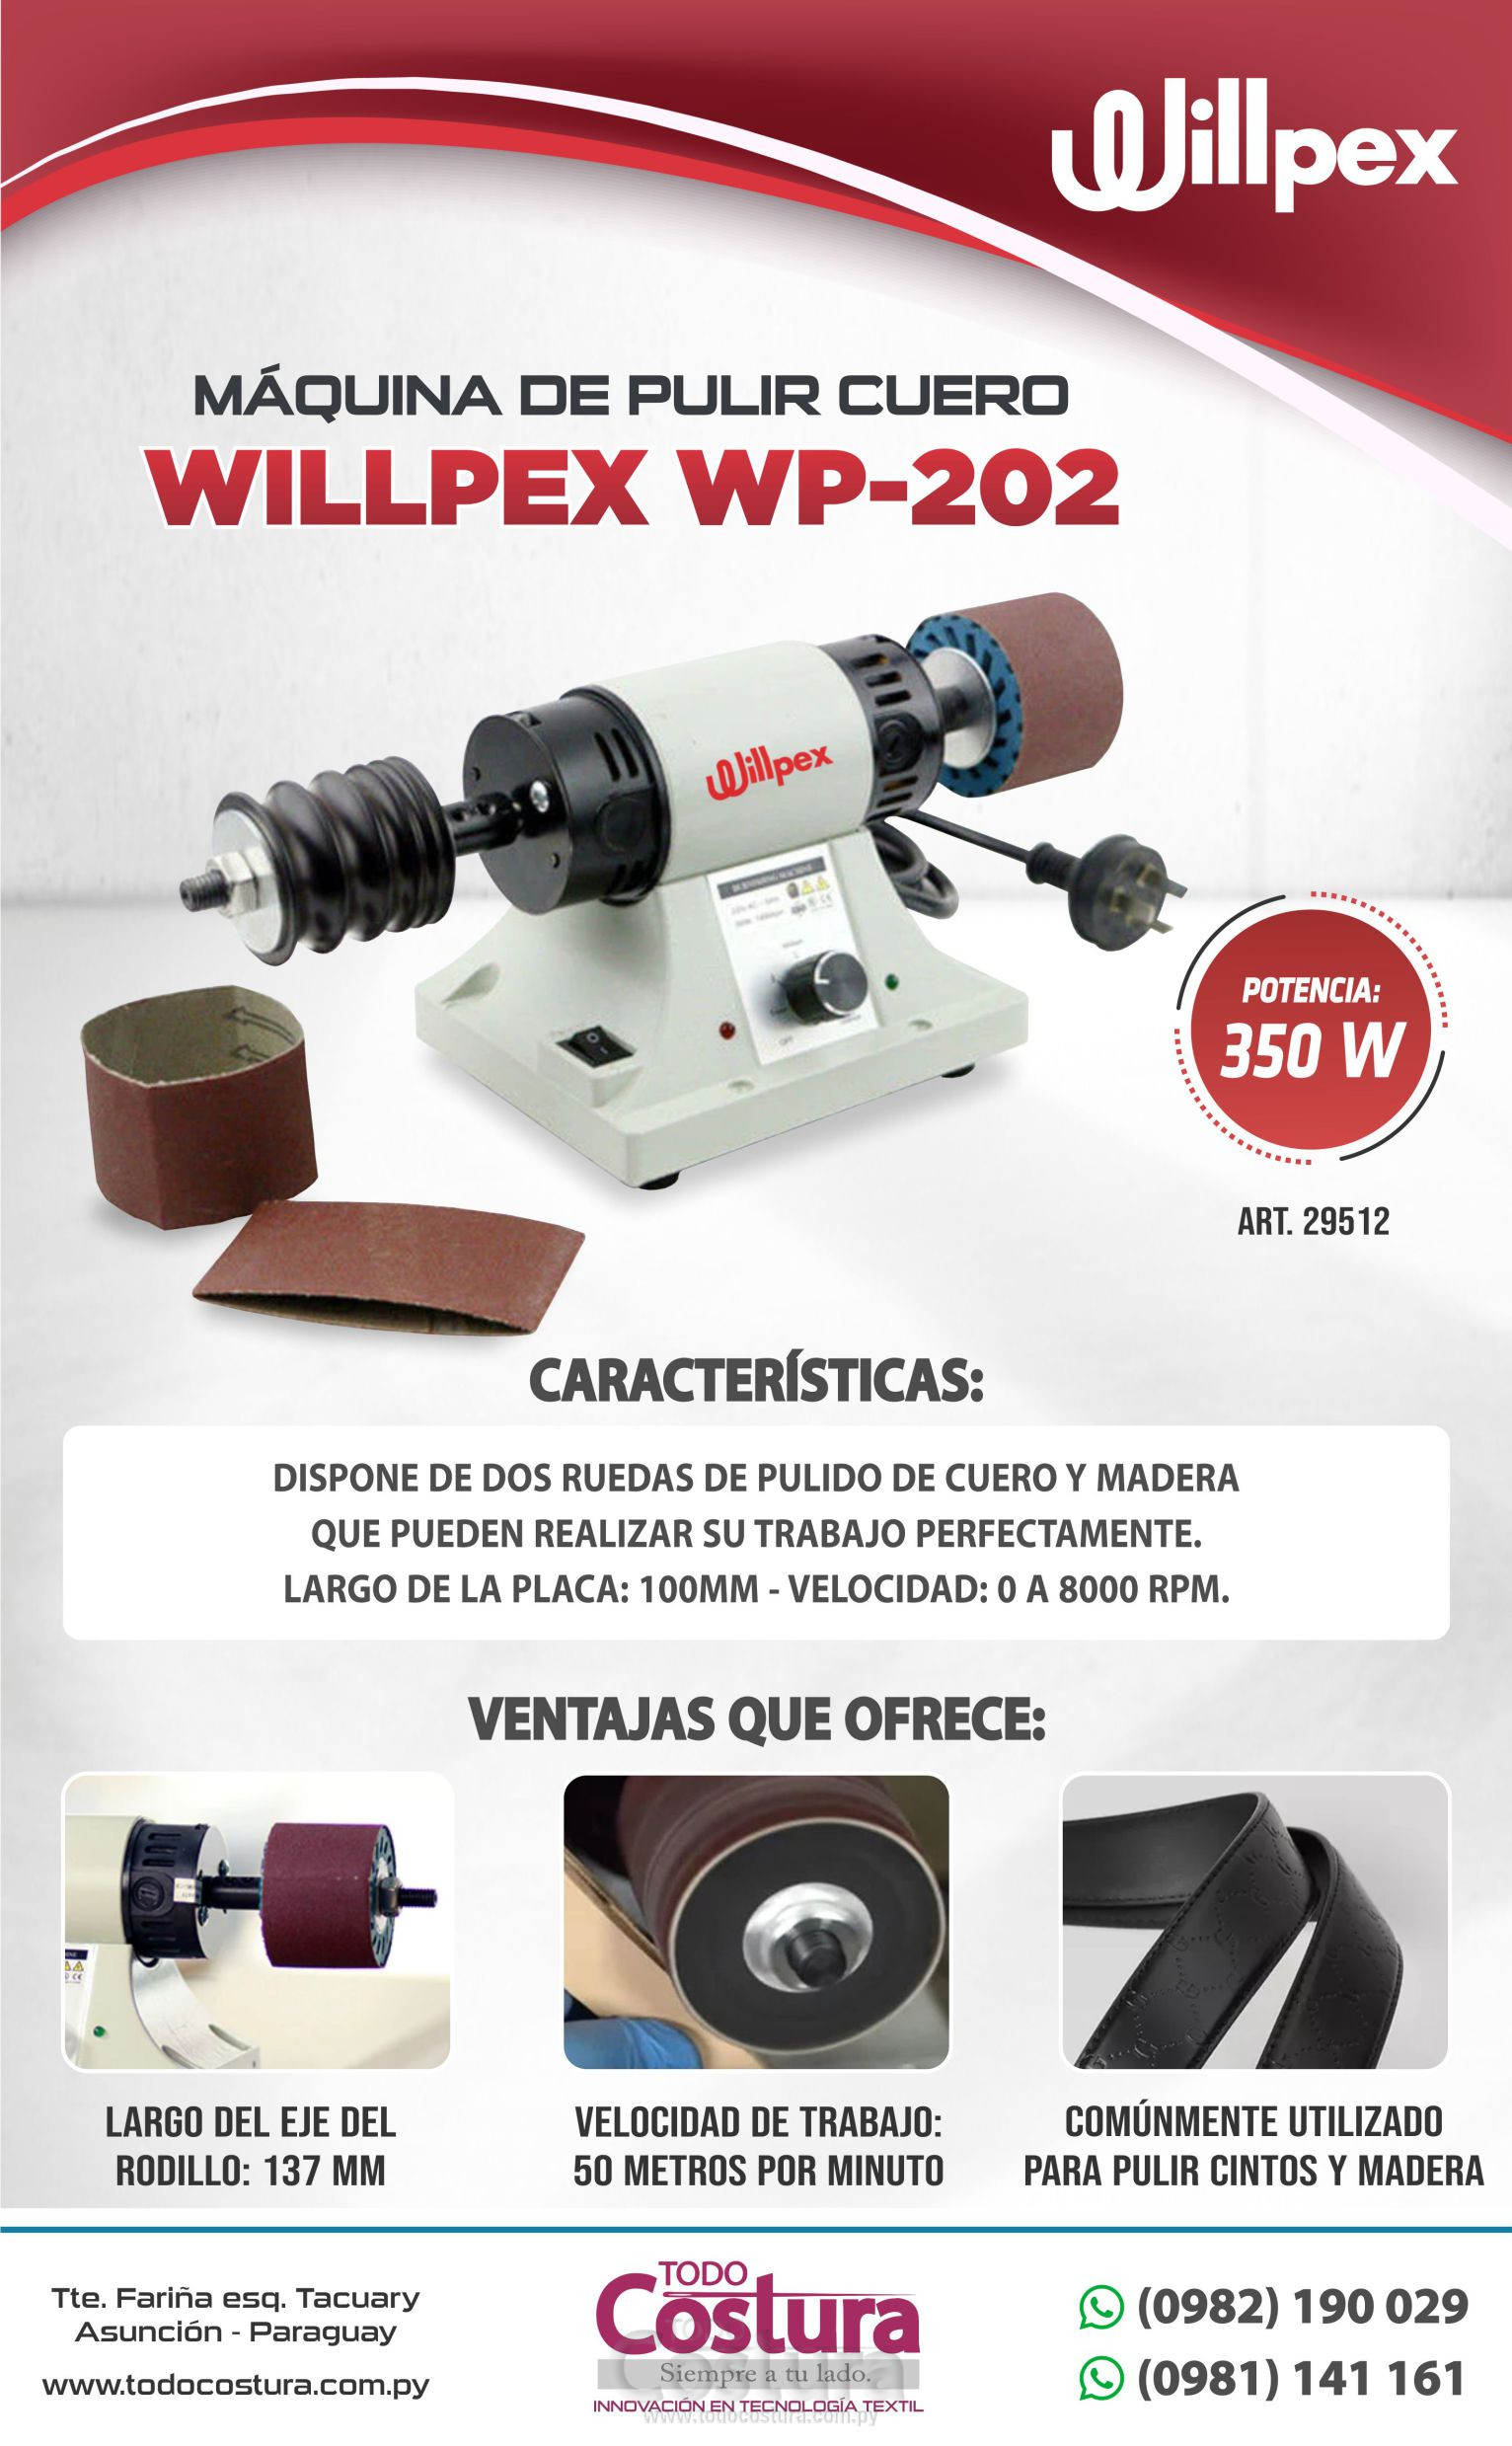 MAQUINA DE PULIR CUERO WILLPEX WP-202